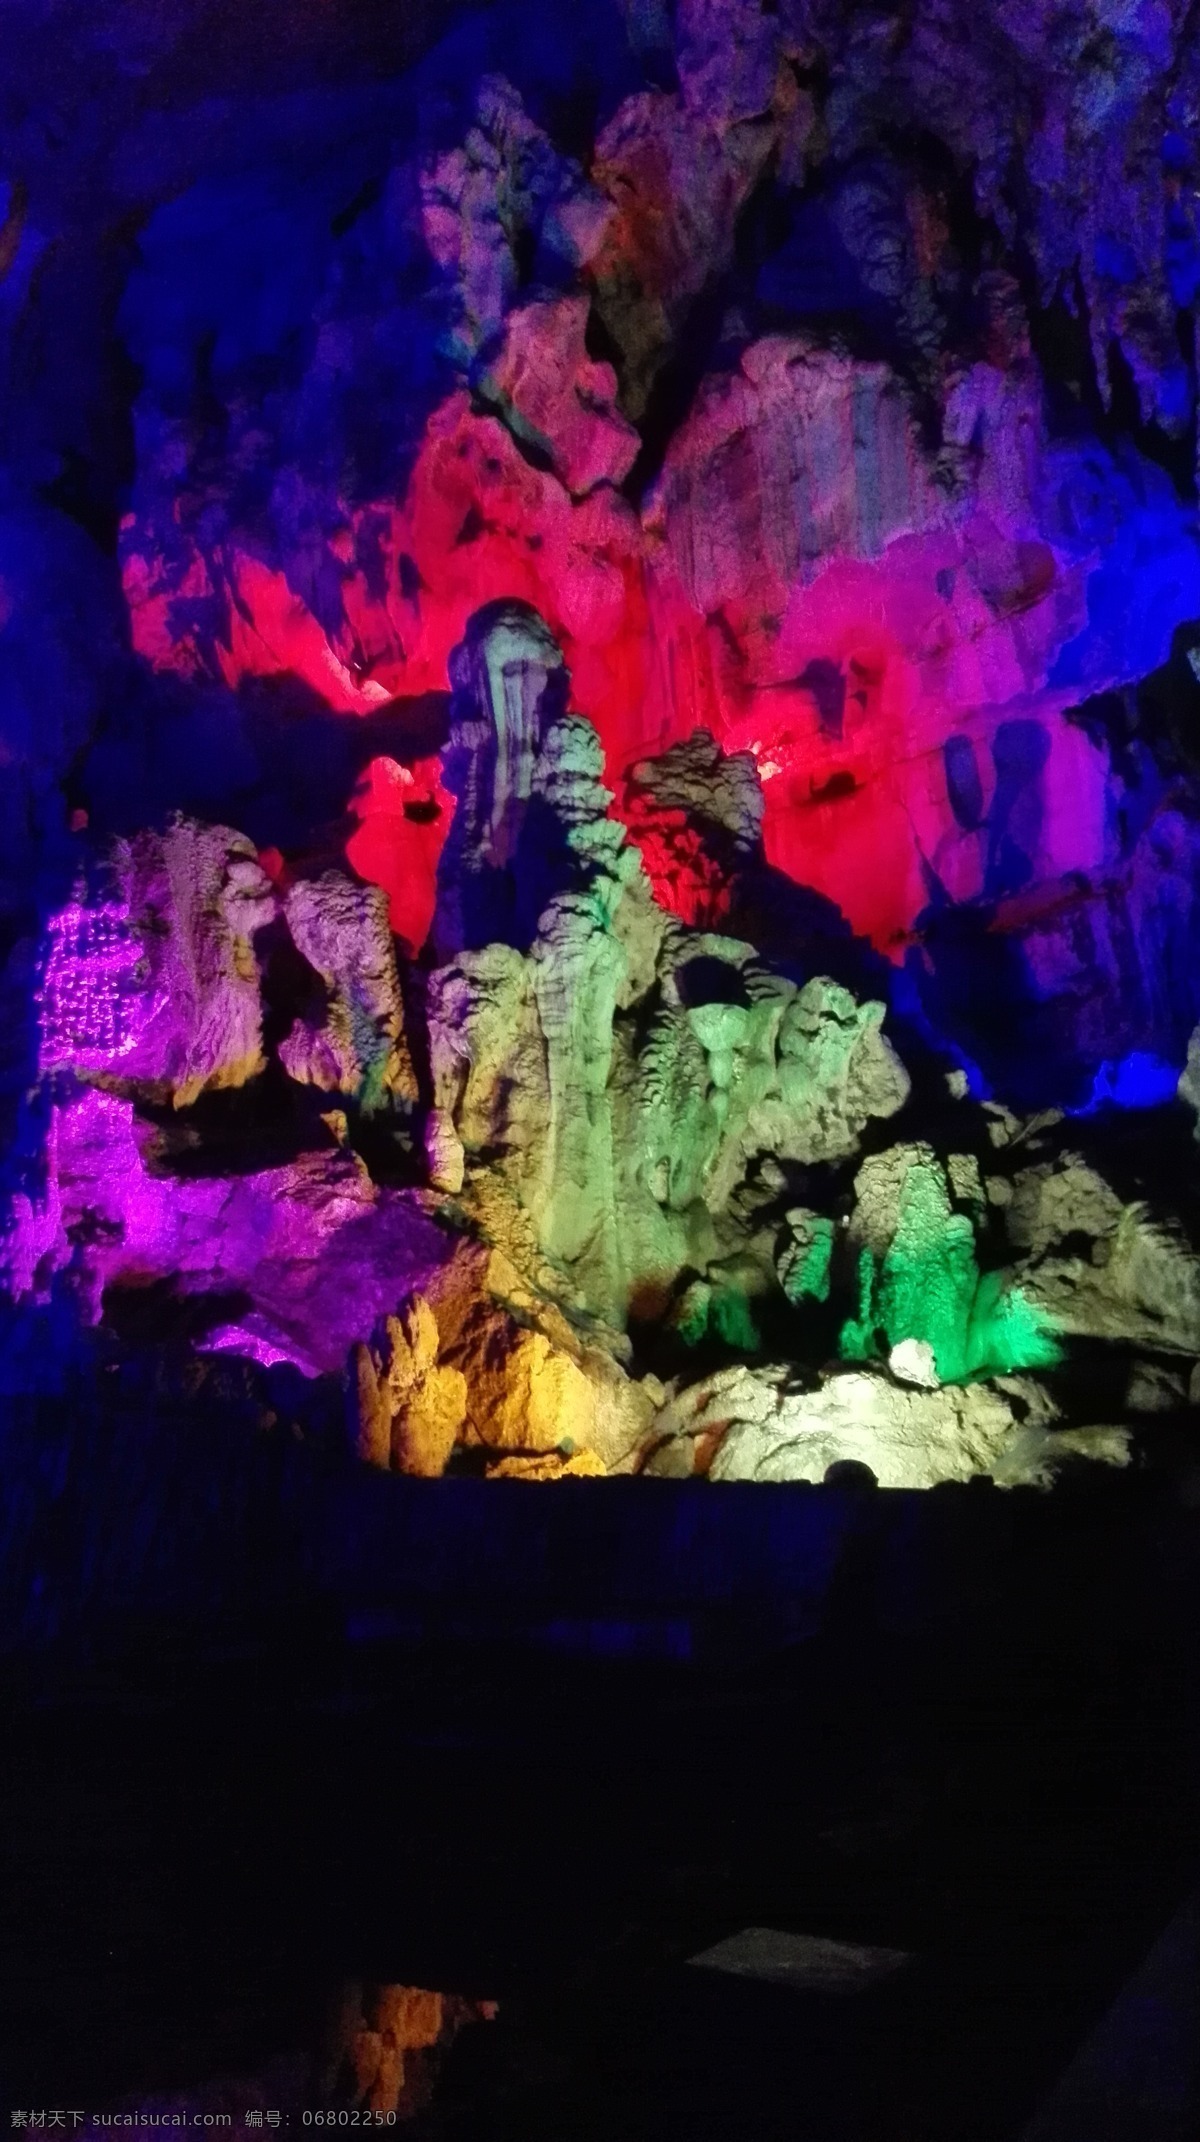 溶洞 桂林溶洞 桂林旅游 彩色石头 绚丽的溶洞 天然溶洞 水溶洞 岩洞 溶洞景观 溶洞奇观 摄影风景 旅游摄影 国内旅游